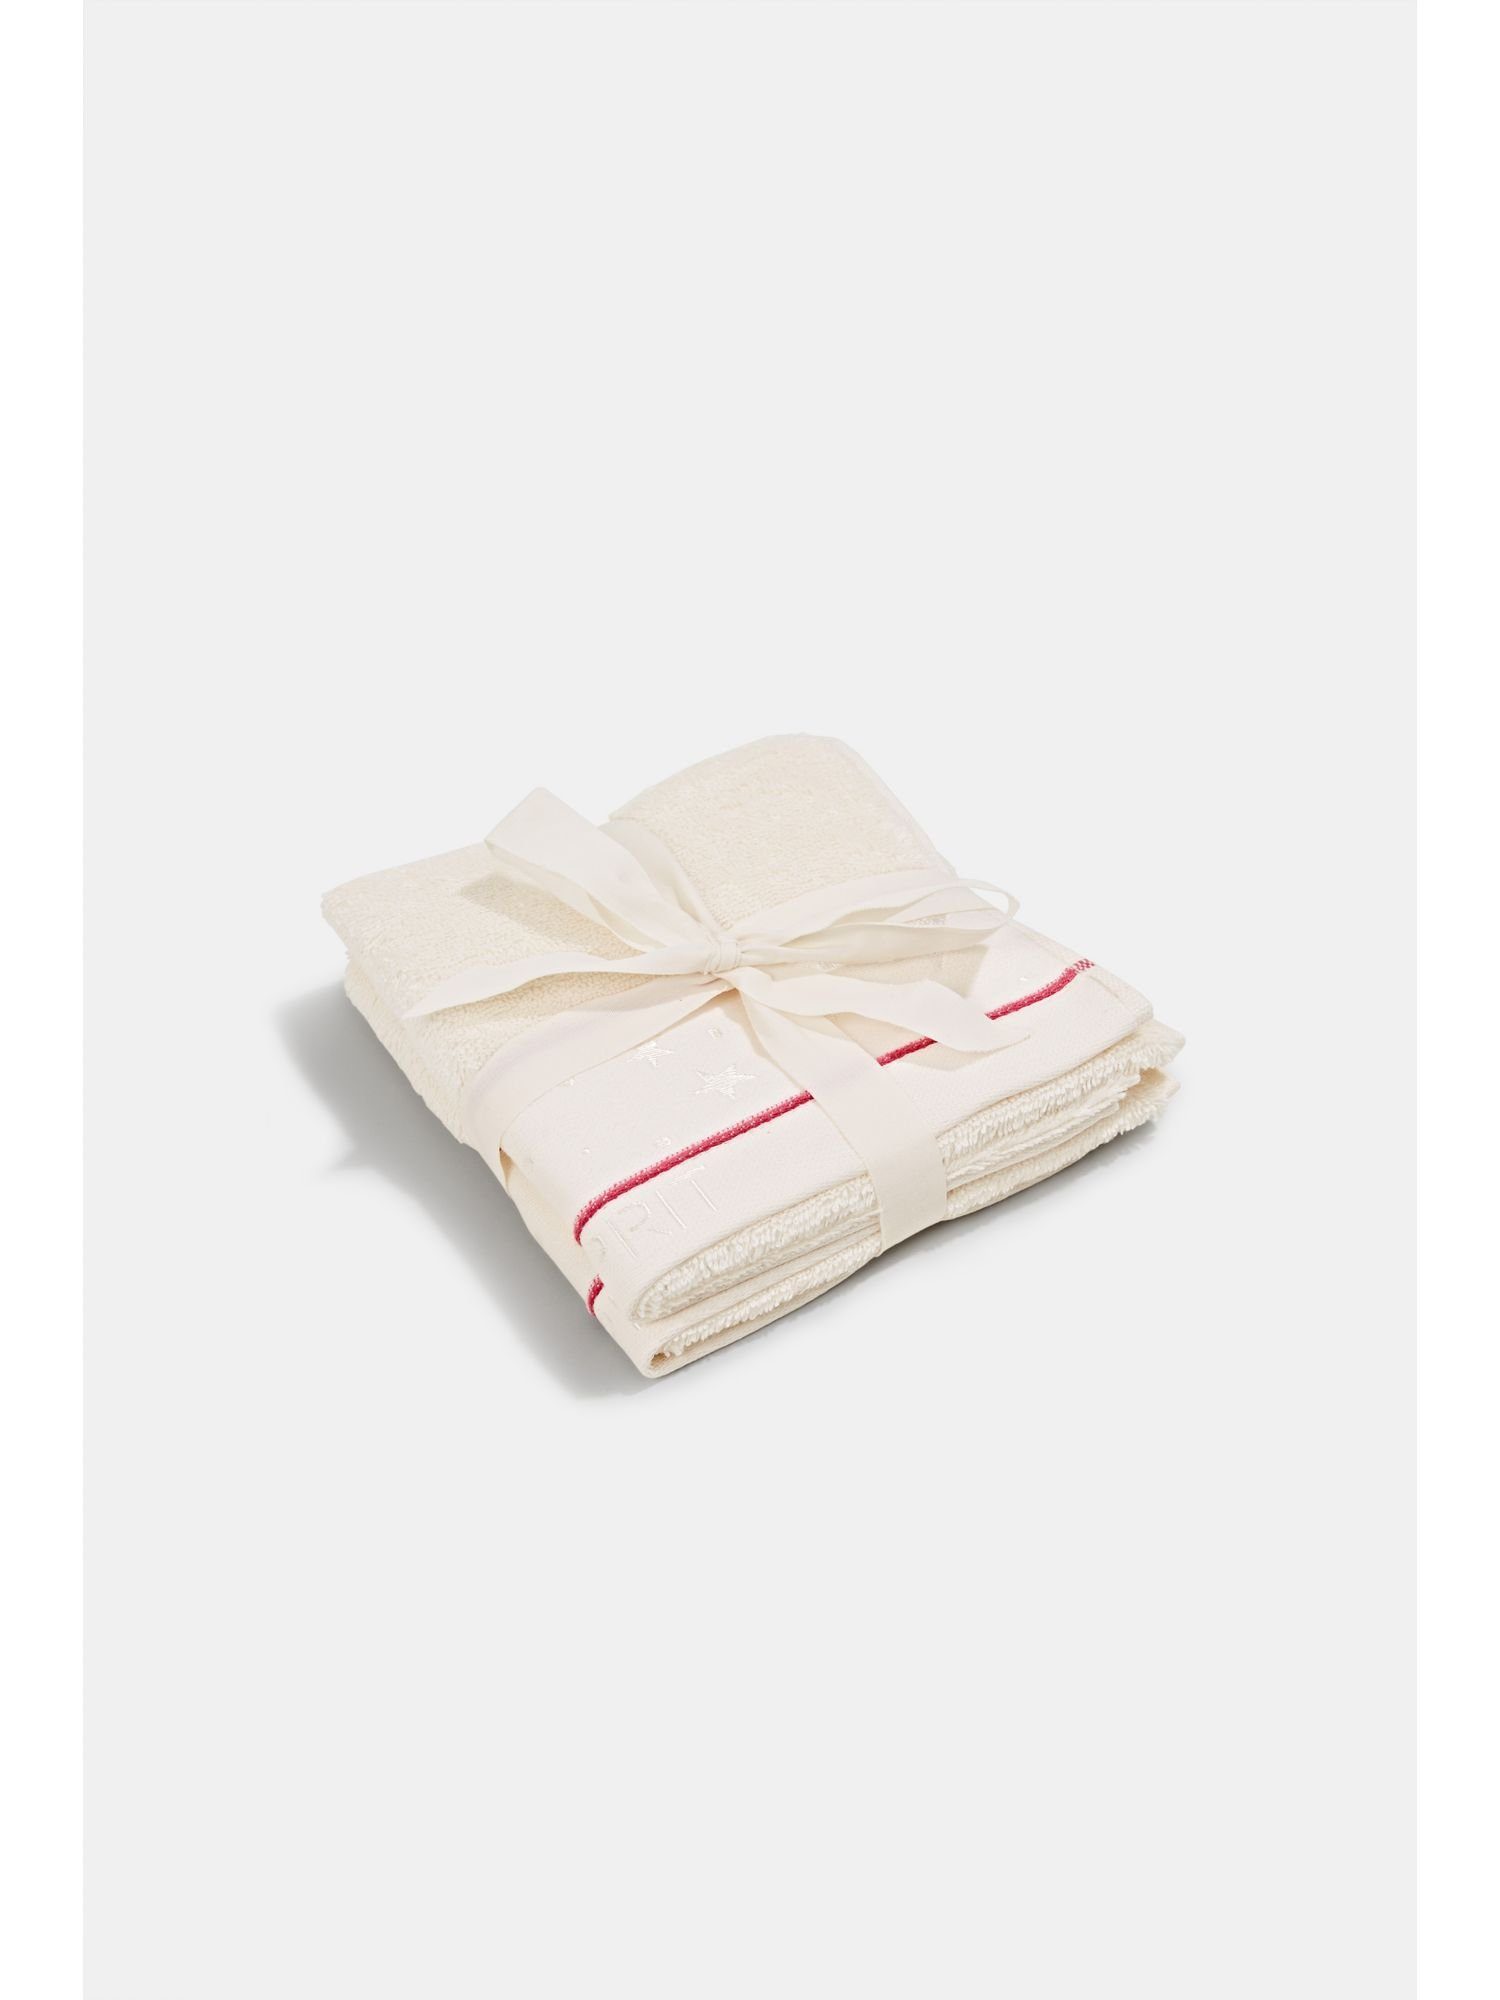 Esprit Handtücher online kaufen | OTTO